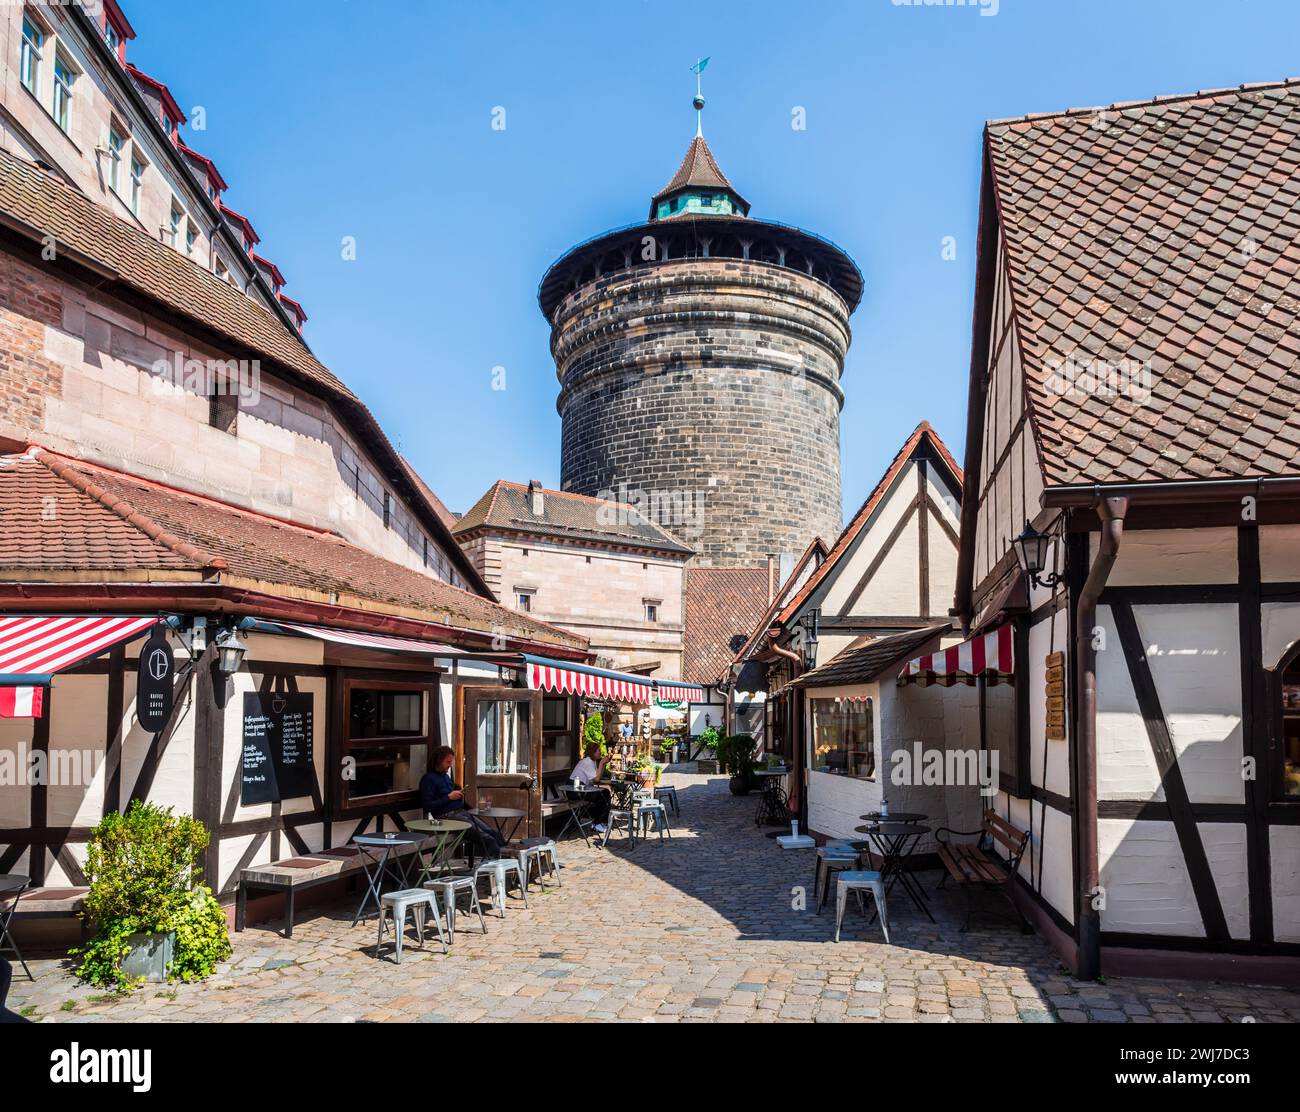 L'Handwerkerhof di Norimberga, in Germania, è un cantiere artigianale nella città vecchia ai piedi della torre Frauentorturm con negozi di artigianato e ristoranti. Foto Stock